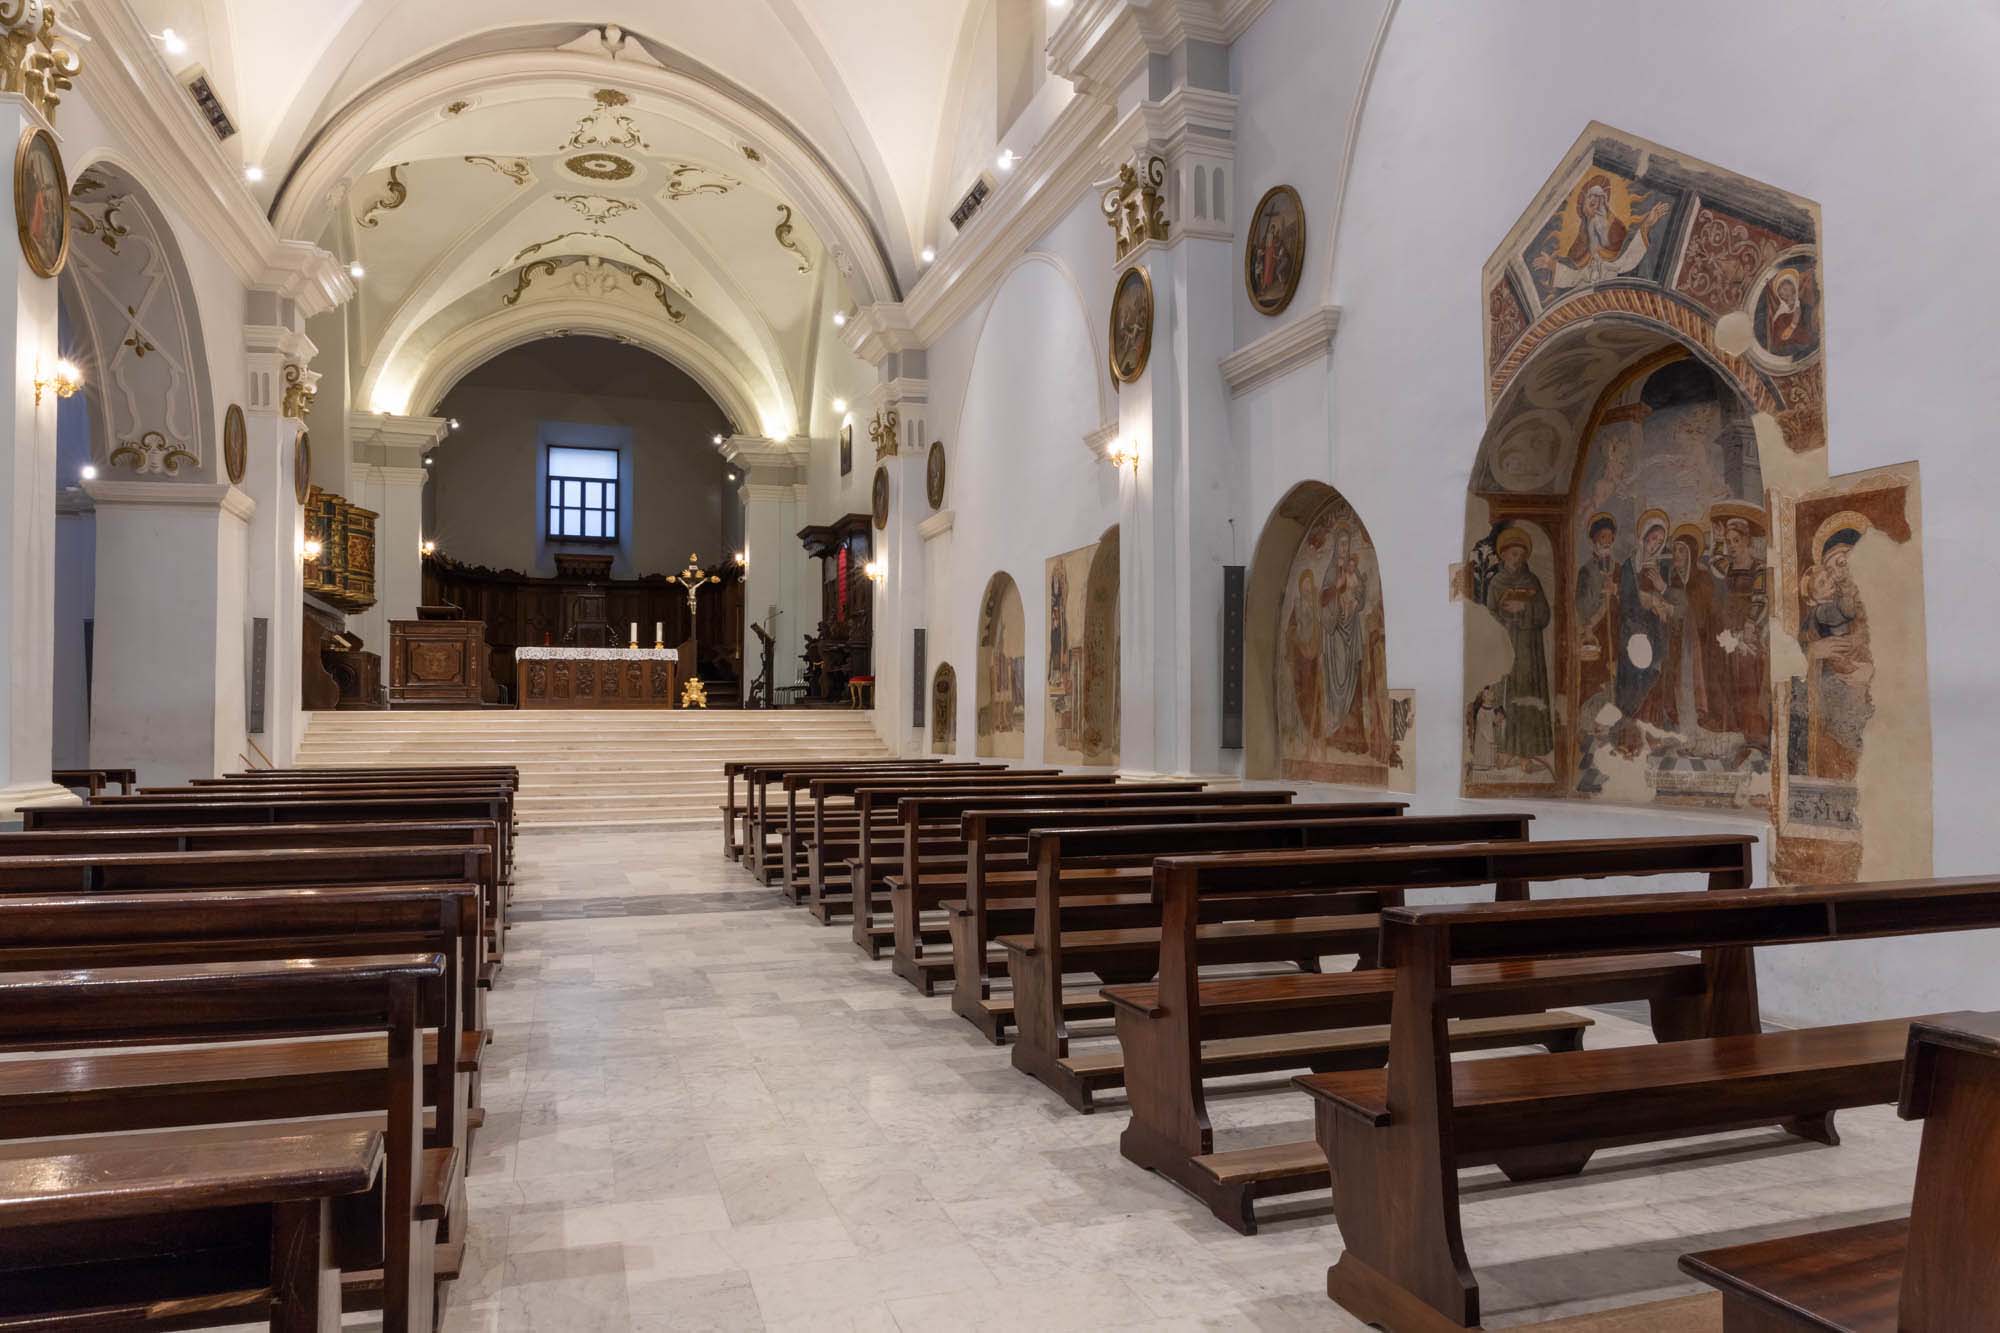 Illuminazione a led e amplificazione sonora<br/>Chiesa Convento Sant’Antonio, Tito (Pz)